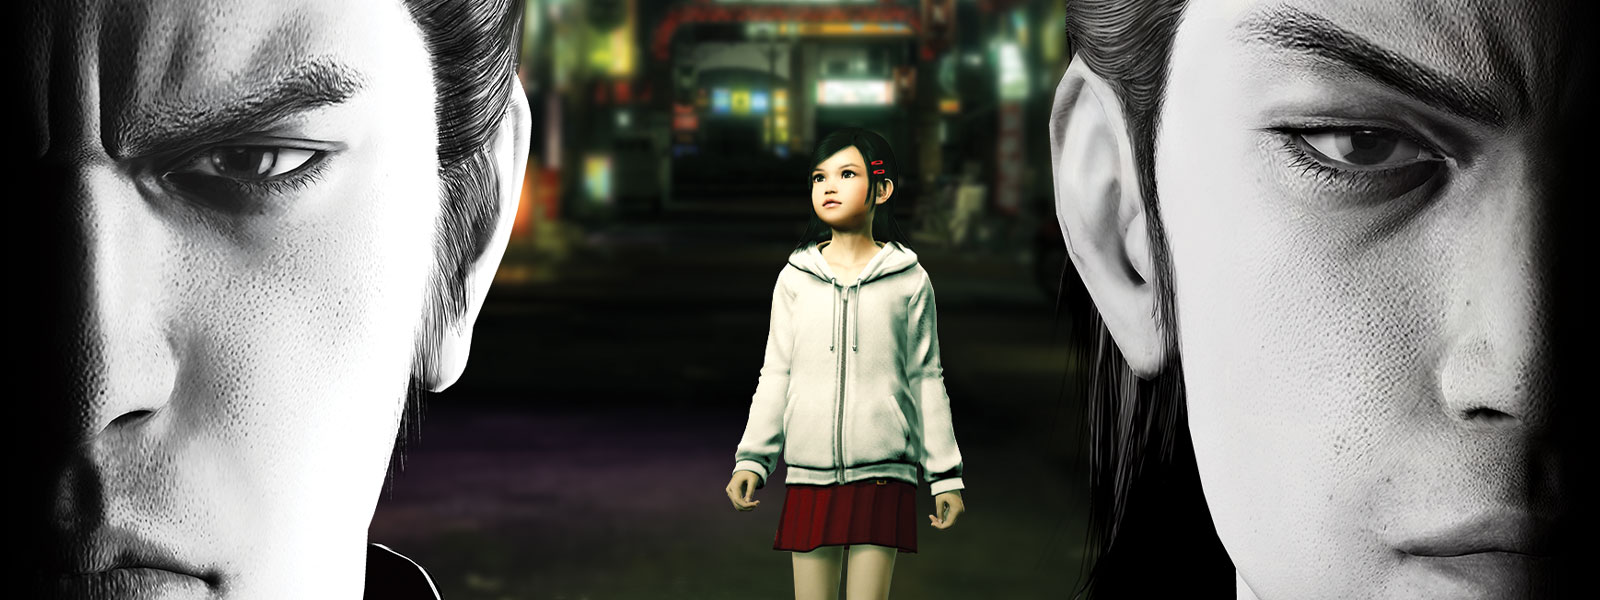 Zwei Yakuza-Charaktere starren düster nach vorne, während ein kleines Mädchen in der Stadt hinter ihnen steht.